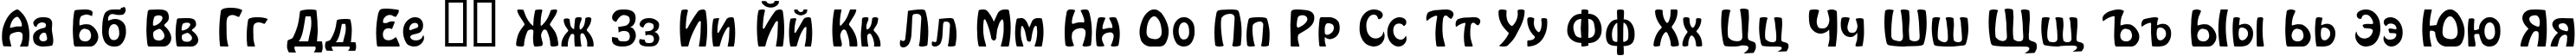 Пример написания русского алфавита шрифтом Hover